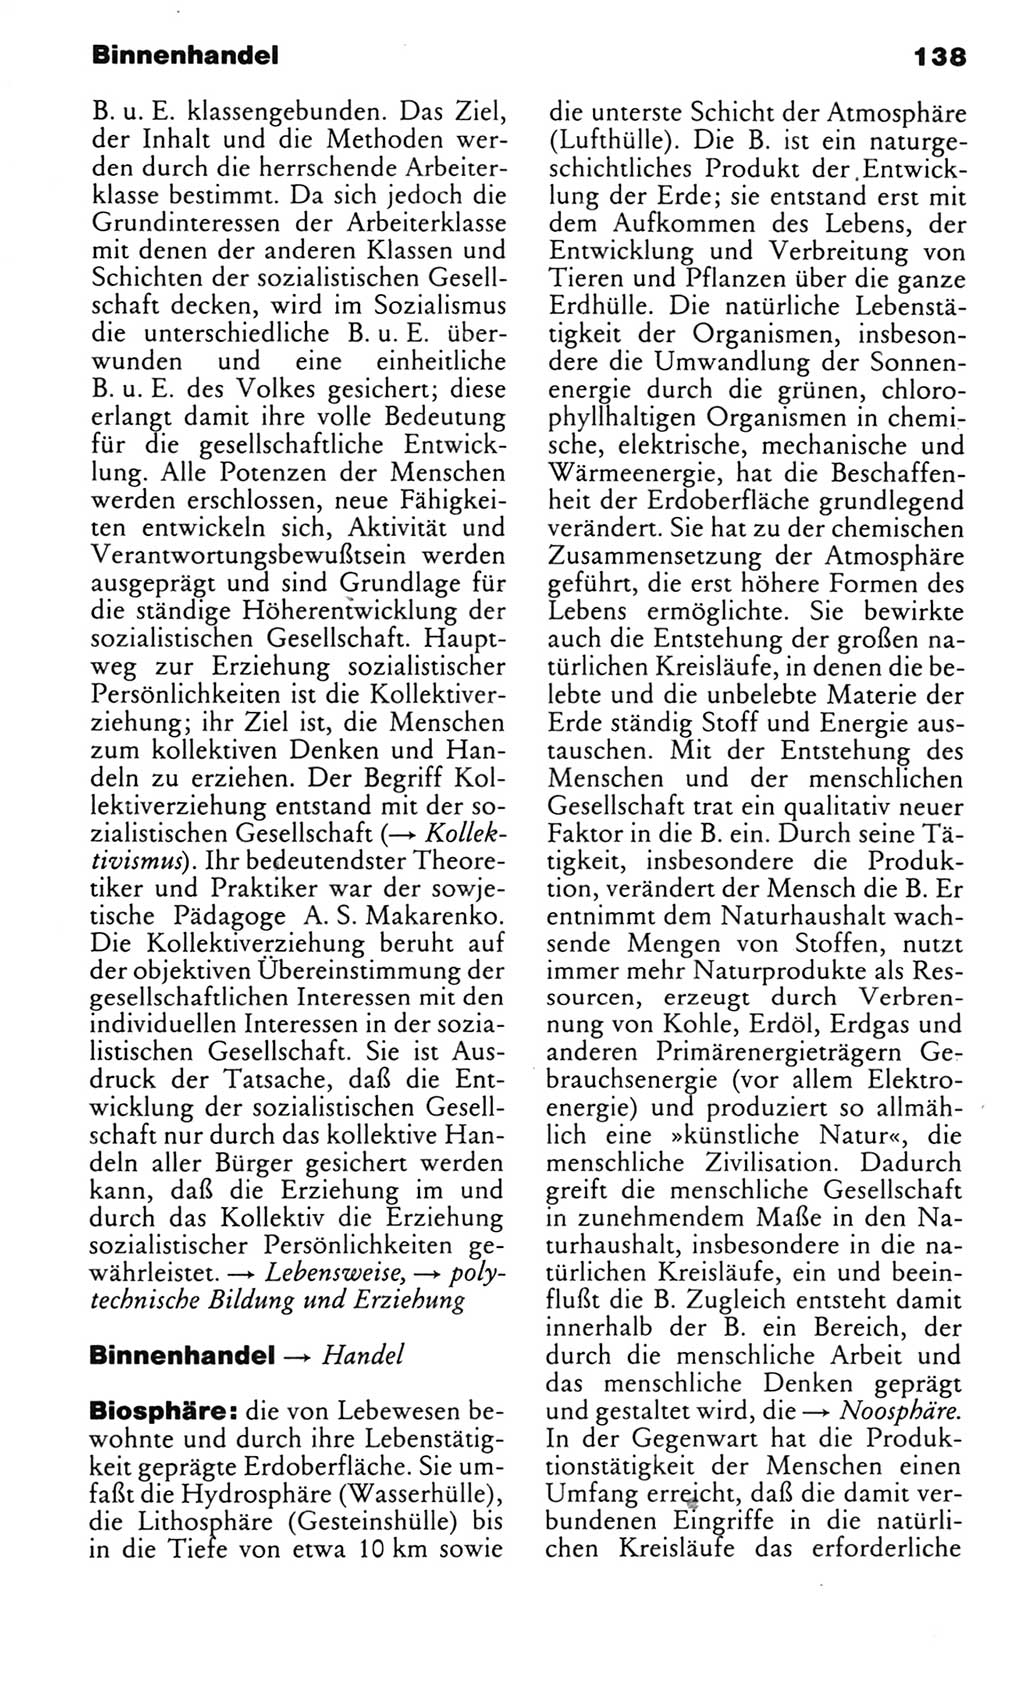 Kleines politisches Wörterbuch [Deutsche Demokratische Republik (DDR)] 1983, Seite 138 (Kl. pol. Wb. DDR 1983, S. 138)